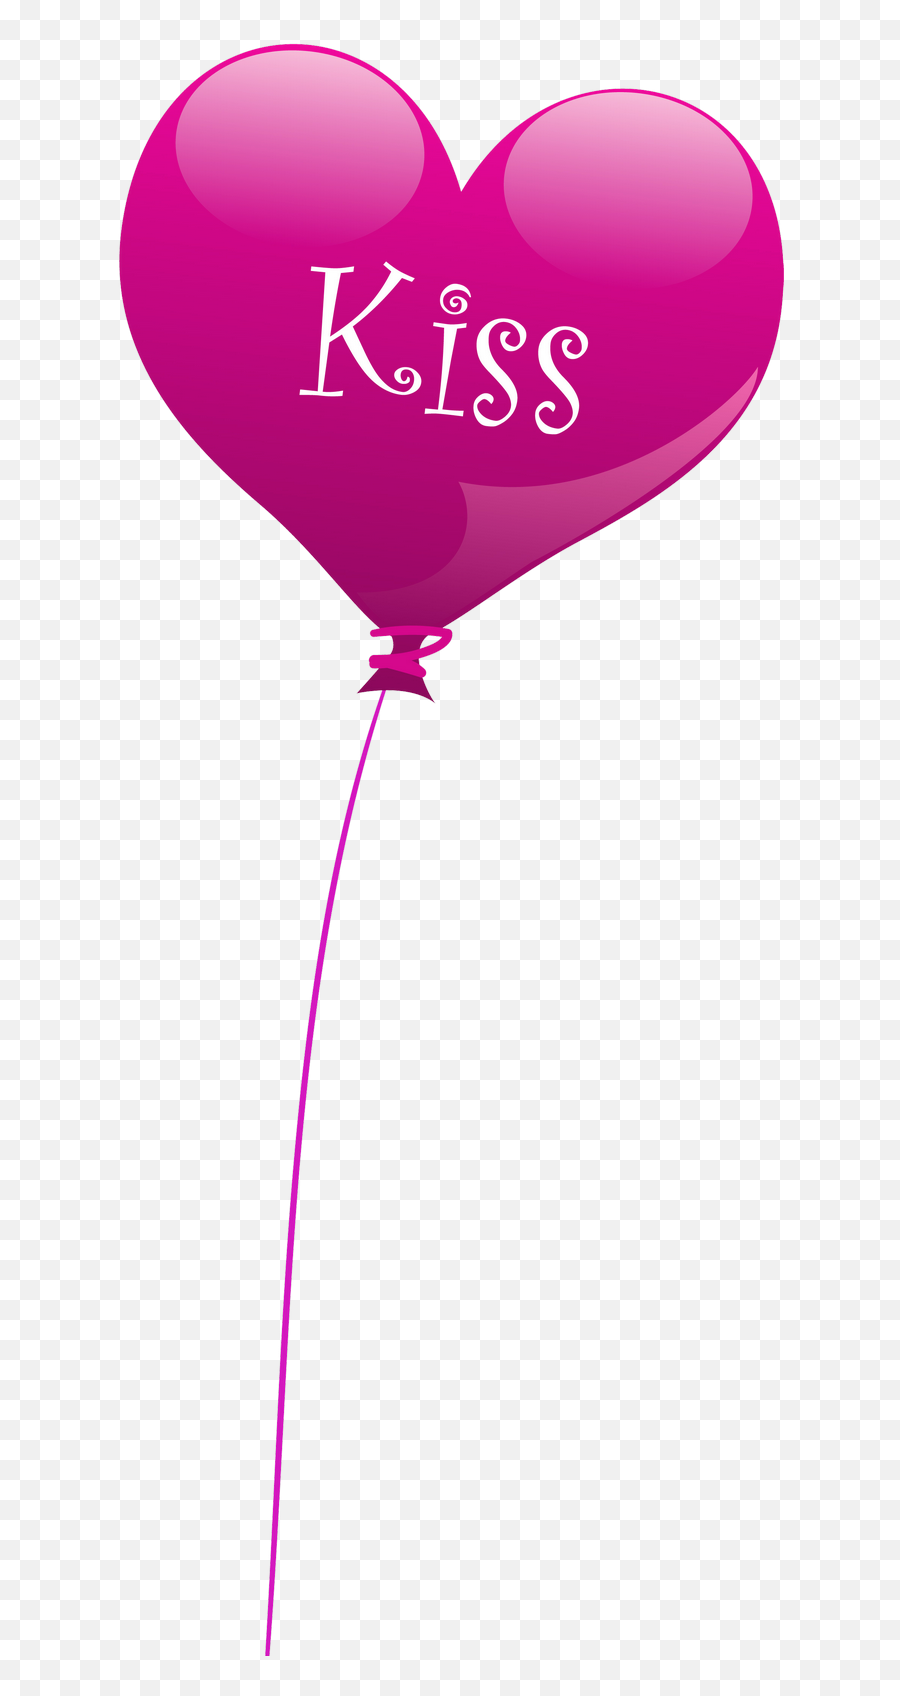 Transparent Heart Kiss Balloon Png Clipart Balloons Clip - Clip Art,Heart Balloons Png